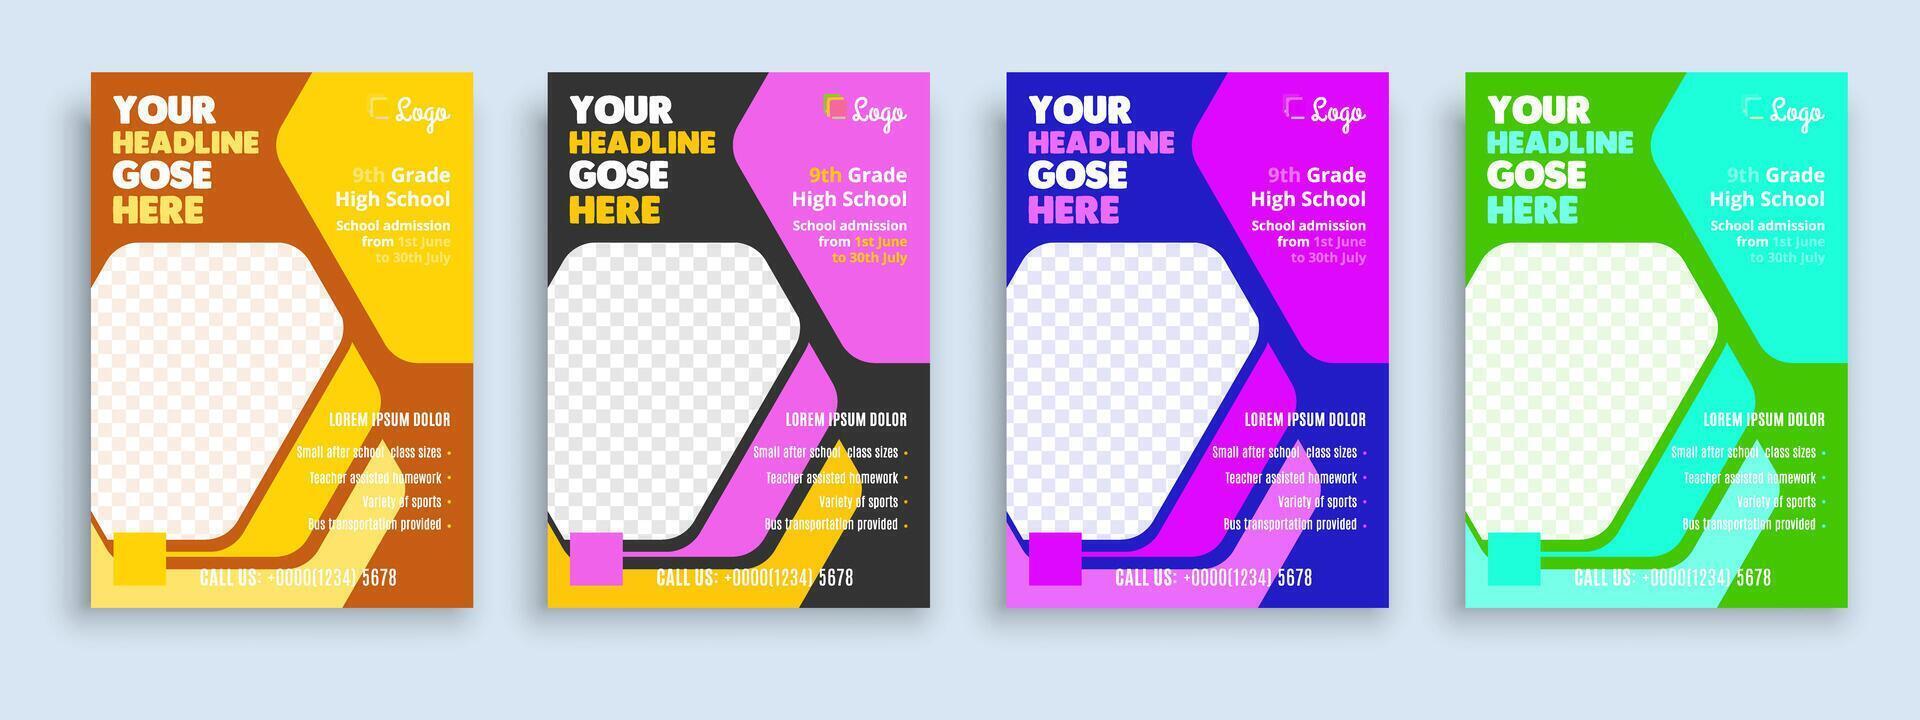 flyer broschüre cover vorlage für kinder zurück zur schulbildung aufnahme layout design vorlage vektor